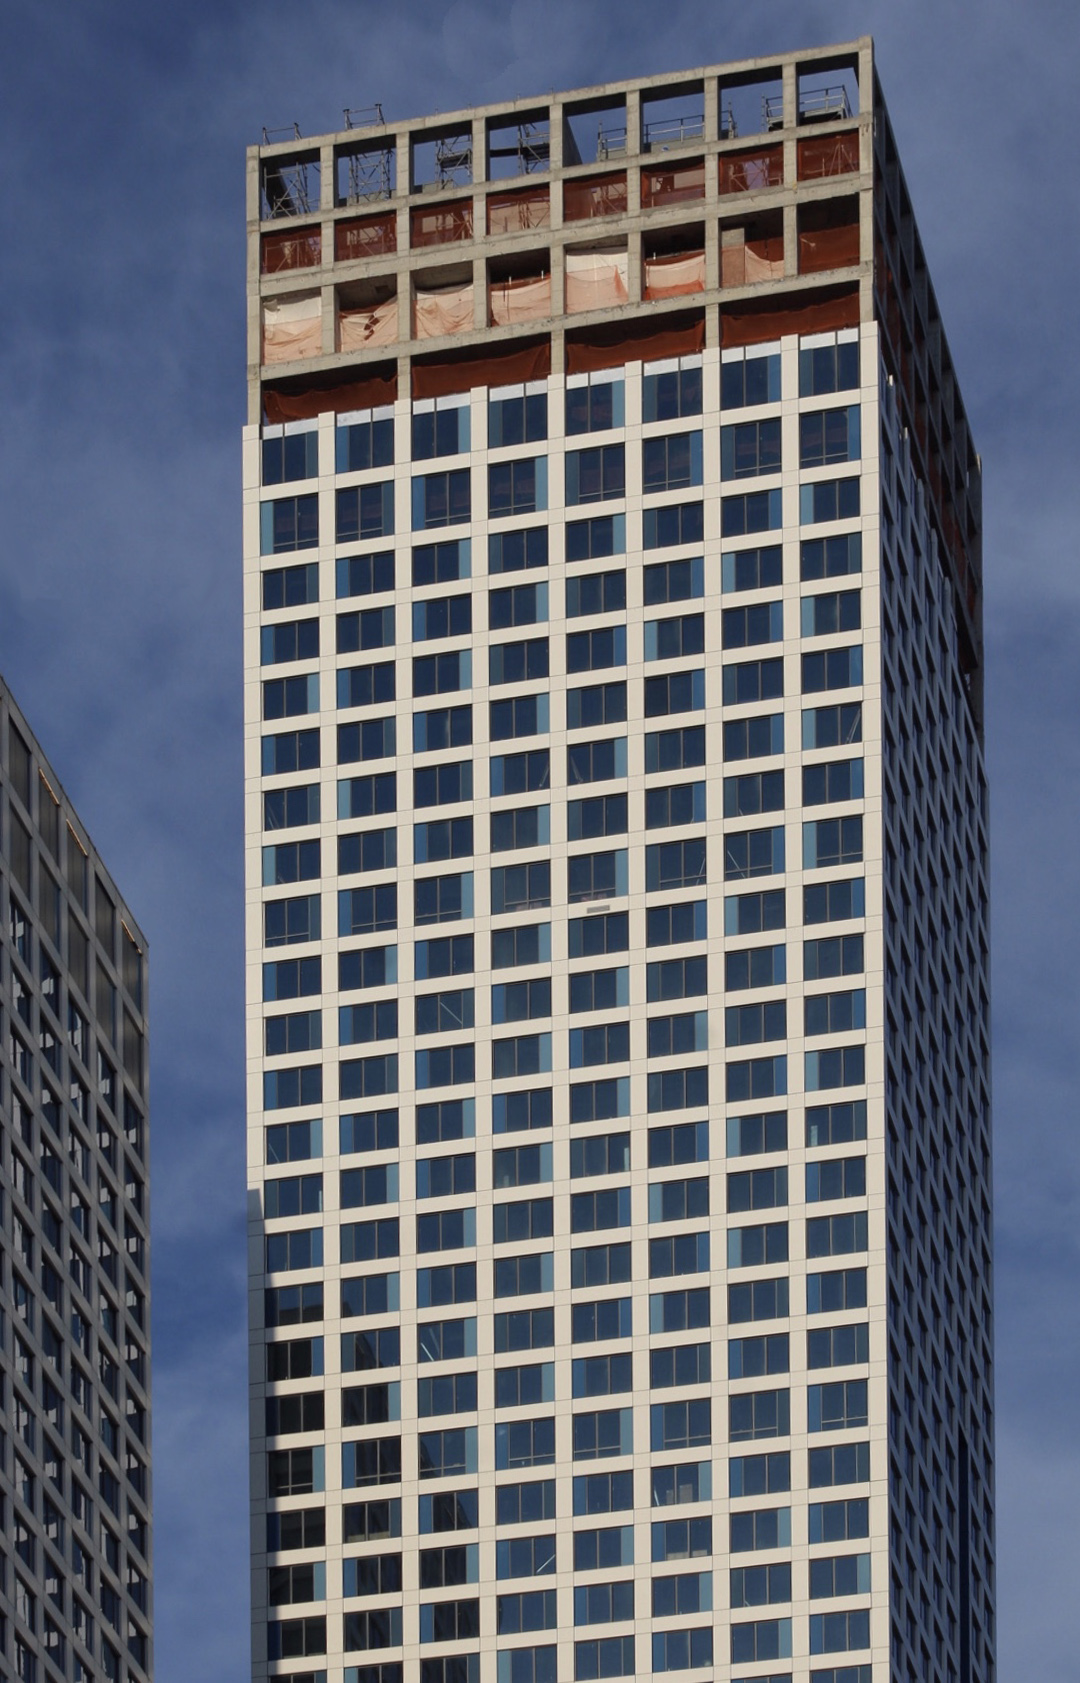 Journal Squared 2 - The Skyscraper Center